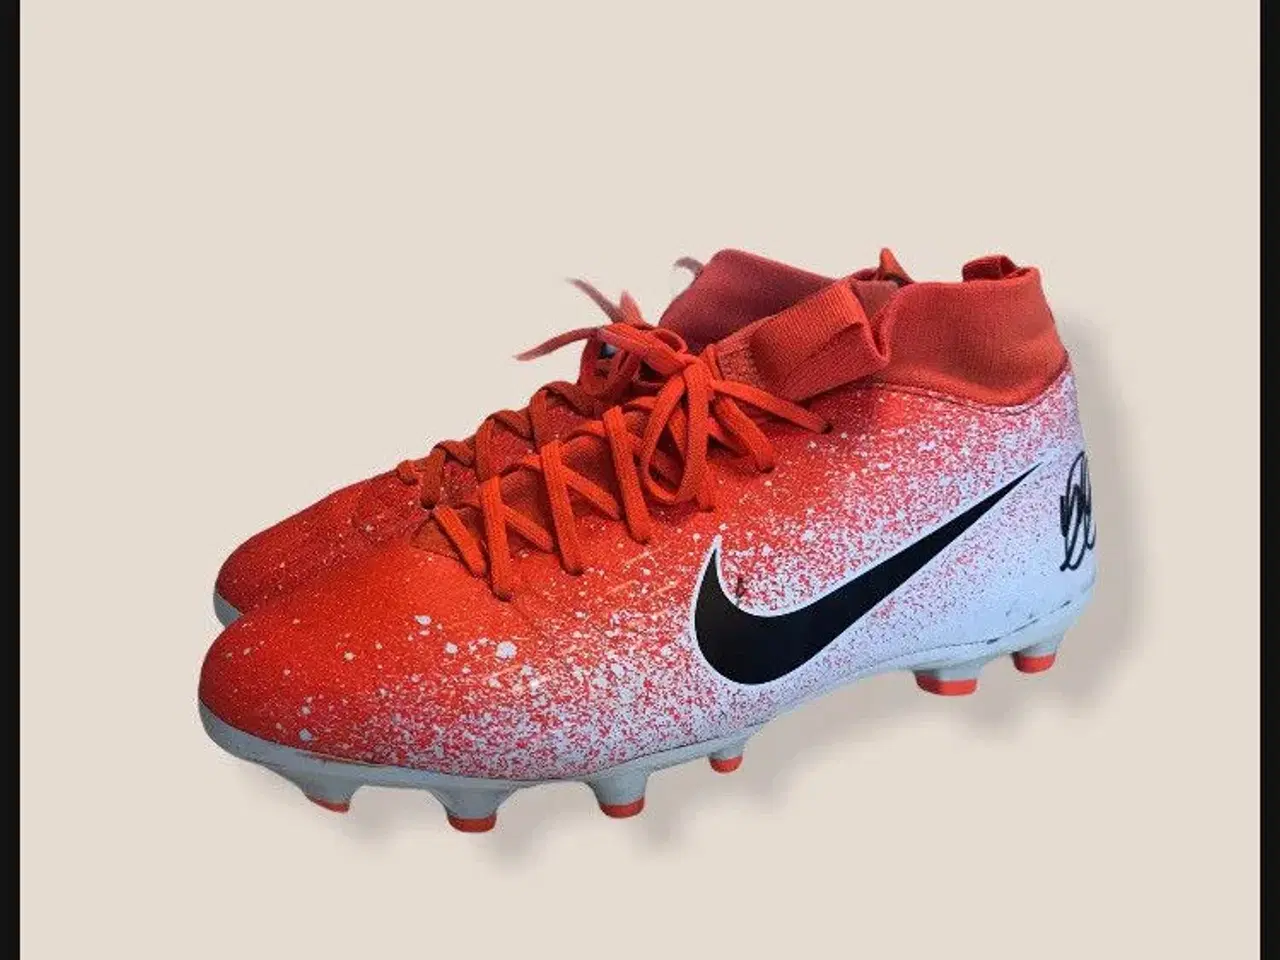 Billede 1 - Orange og hvide Nike fodboldstøvler